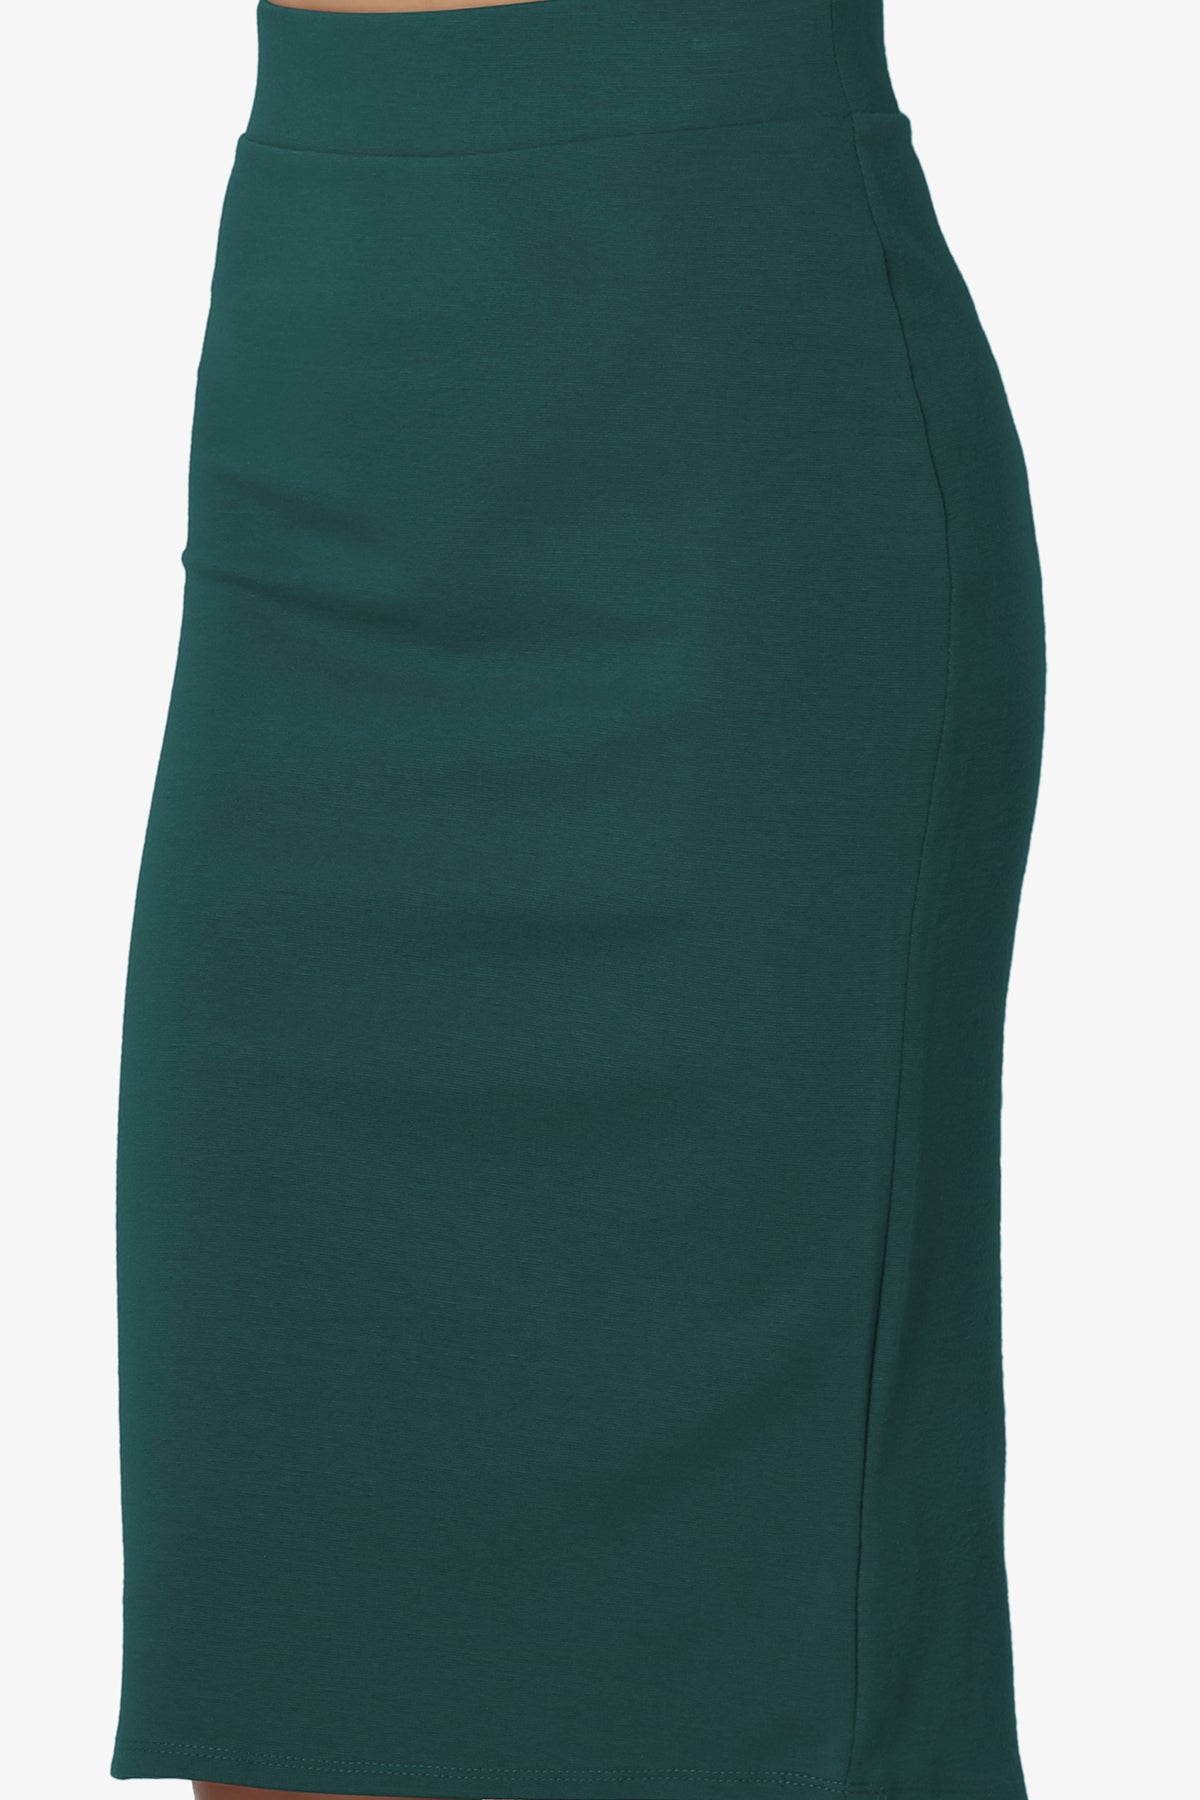 Gisele Ponte Basic Knee Pnecil Skirt HUNTER GREEN_5